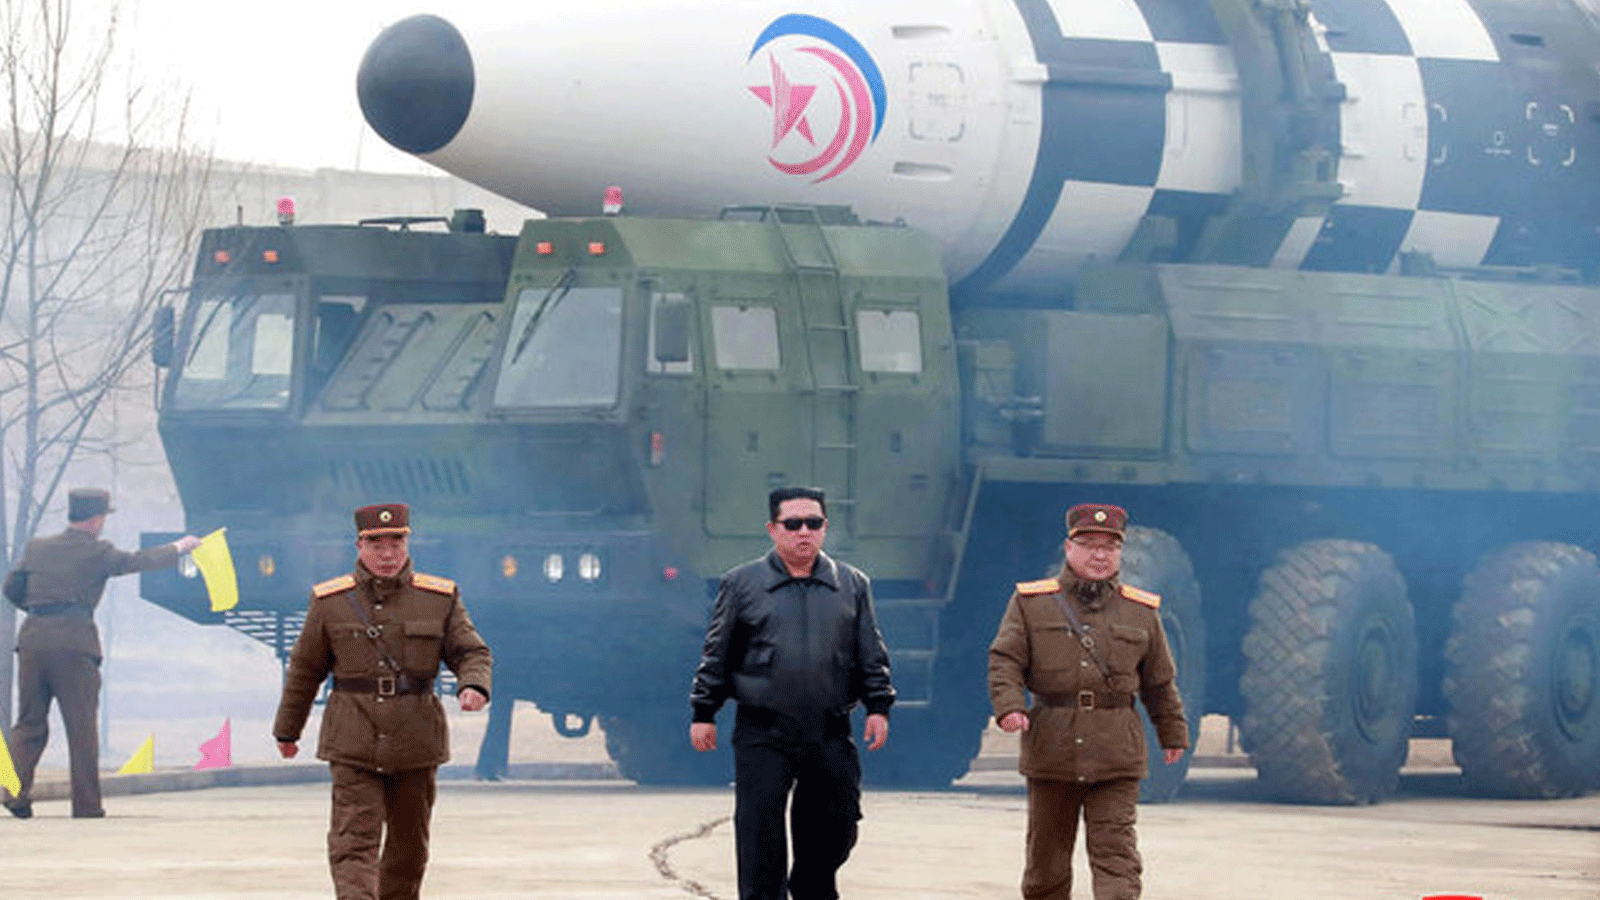 الزعيم الكوري الشمالي كيم جونغ أون يسير بالقرب من صاروخ باليستي جديد عابر للقارات قبل إطلاقه التجريبي في مكان لم يكشف عنه في كوريا الشمالية